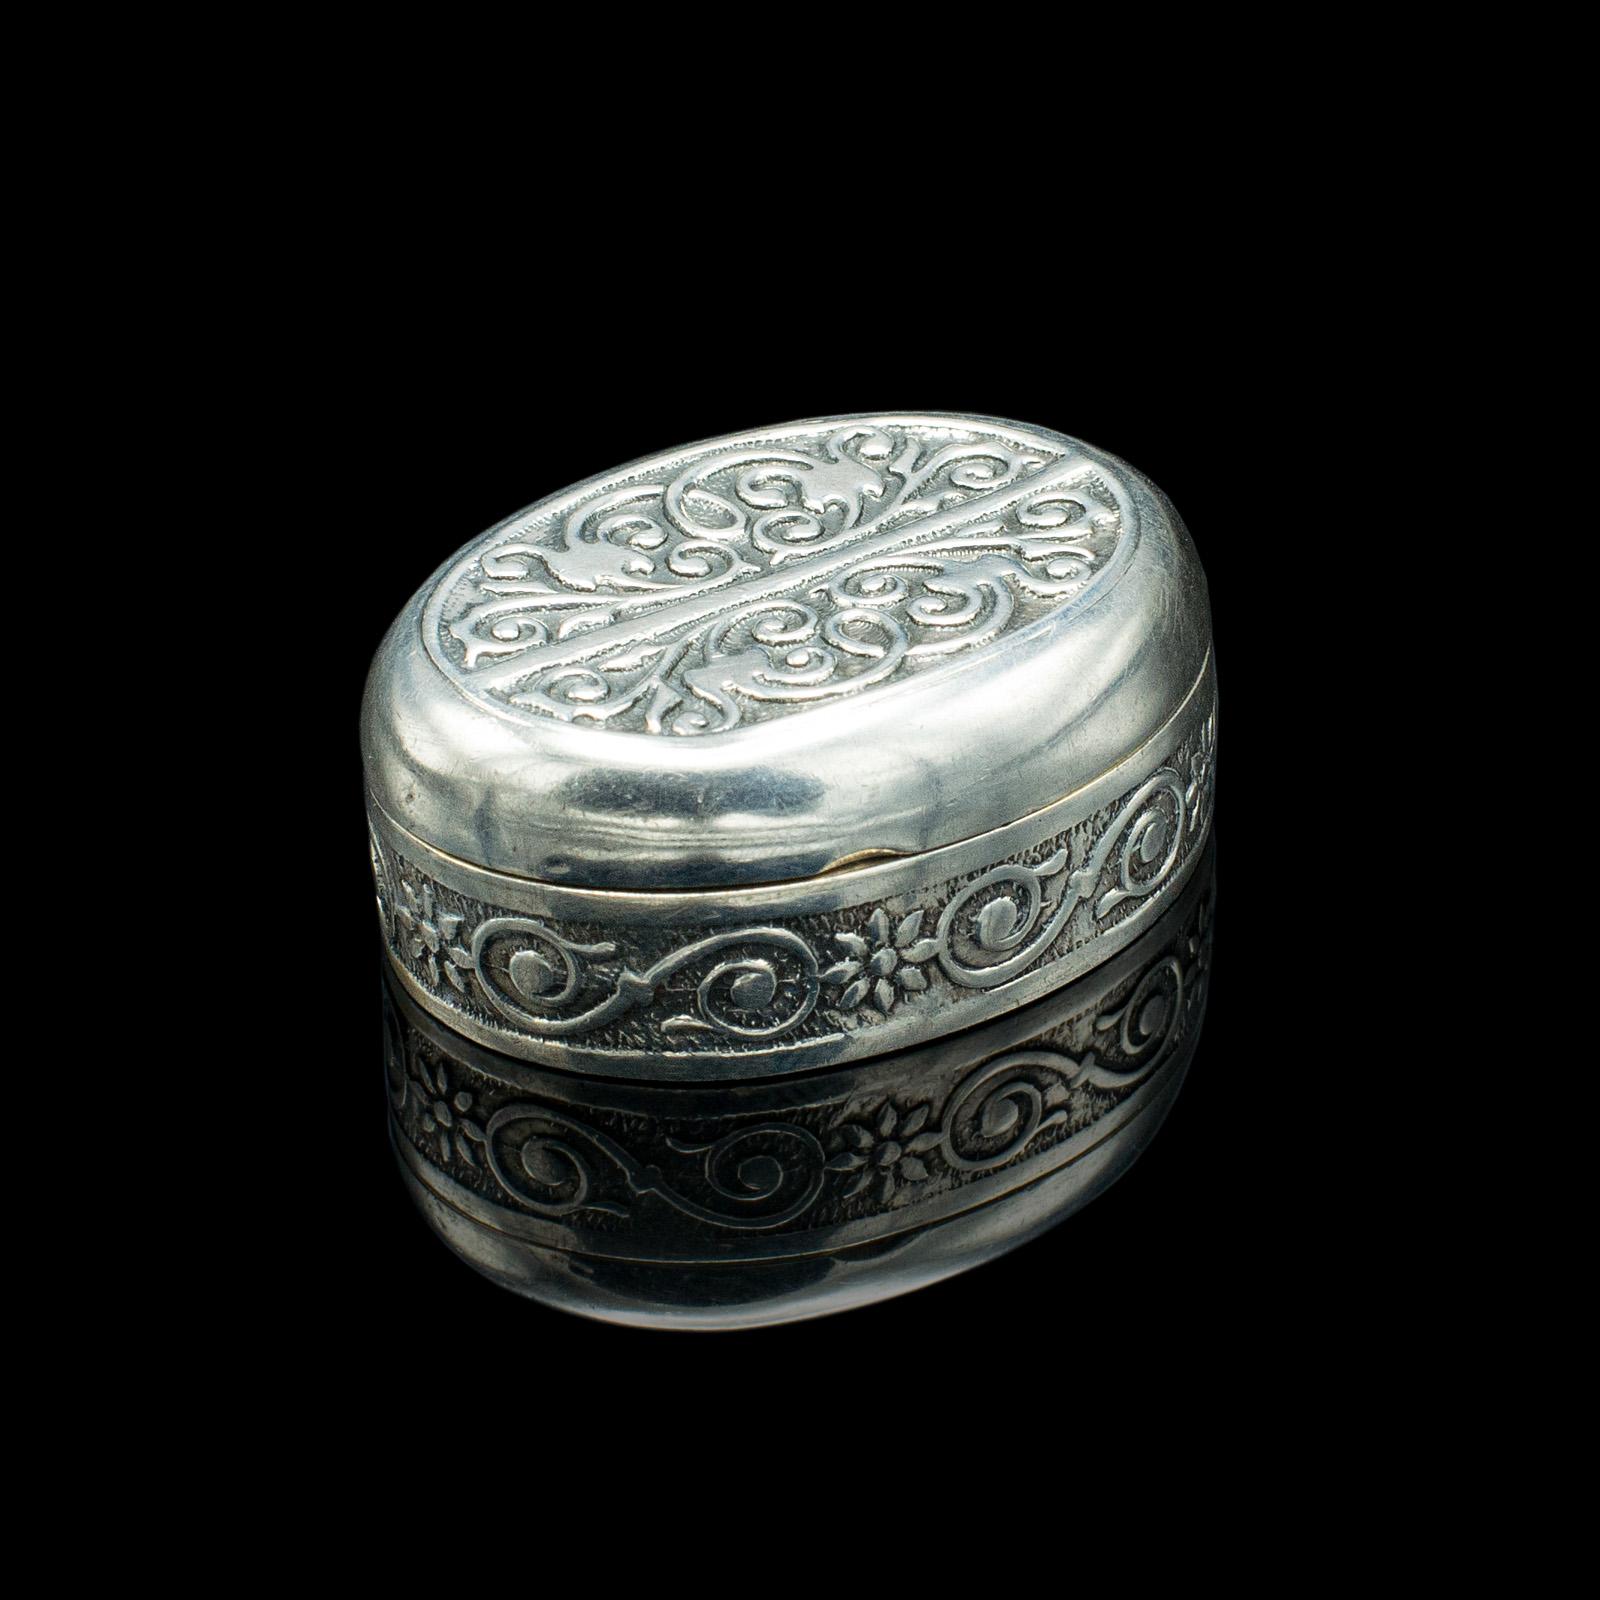 Late Victorian Small Antique Snuff Pot, Continental, Silver, Pill Box, Art Nouveau, Victorian